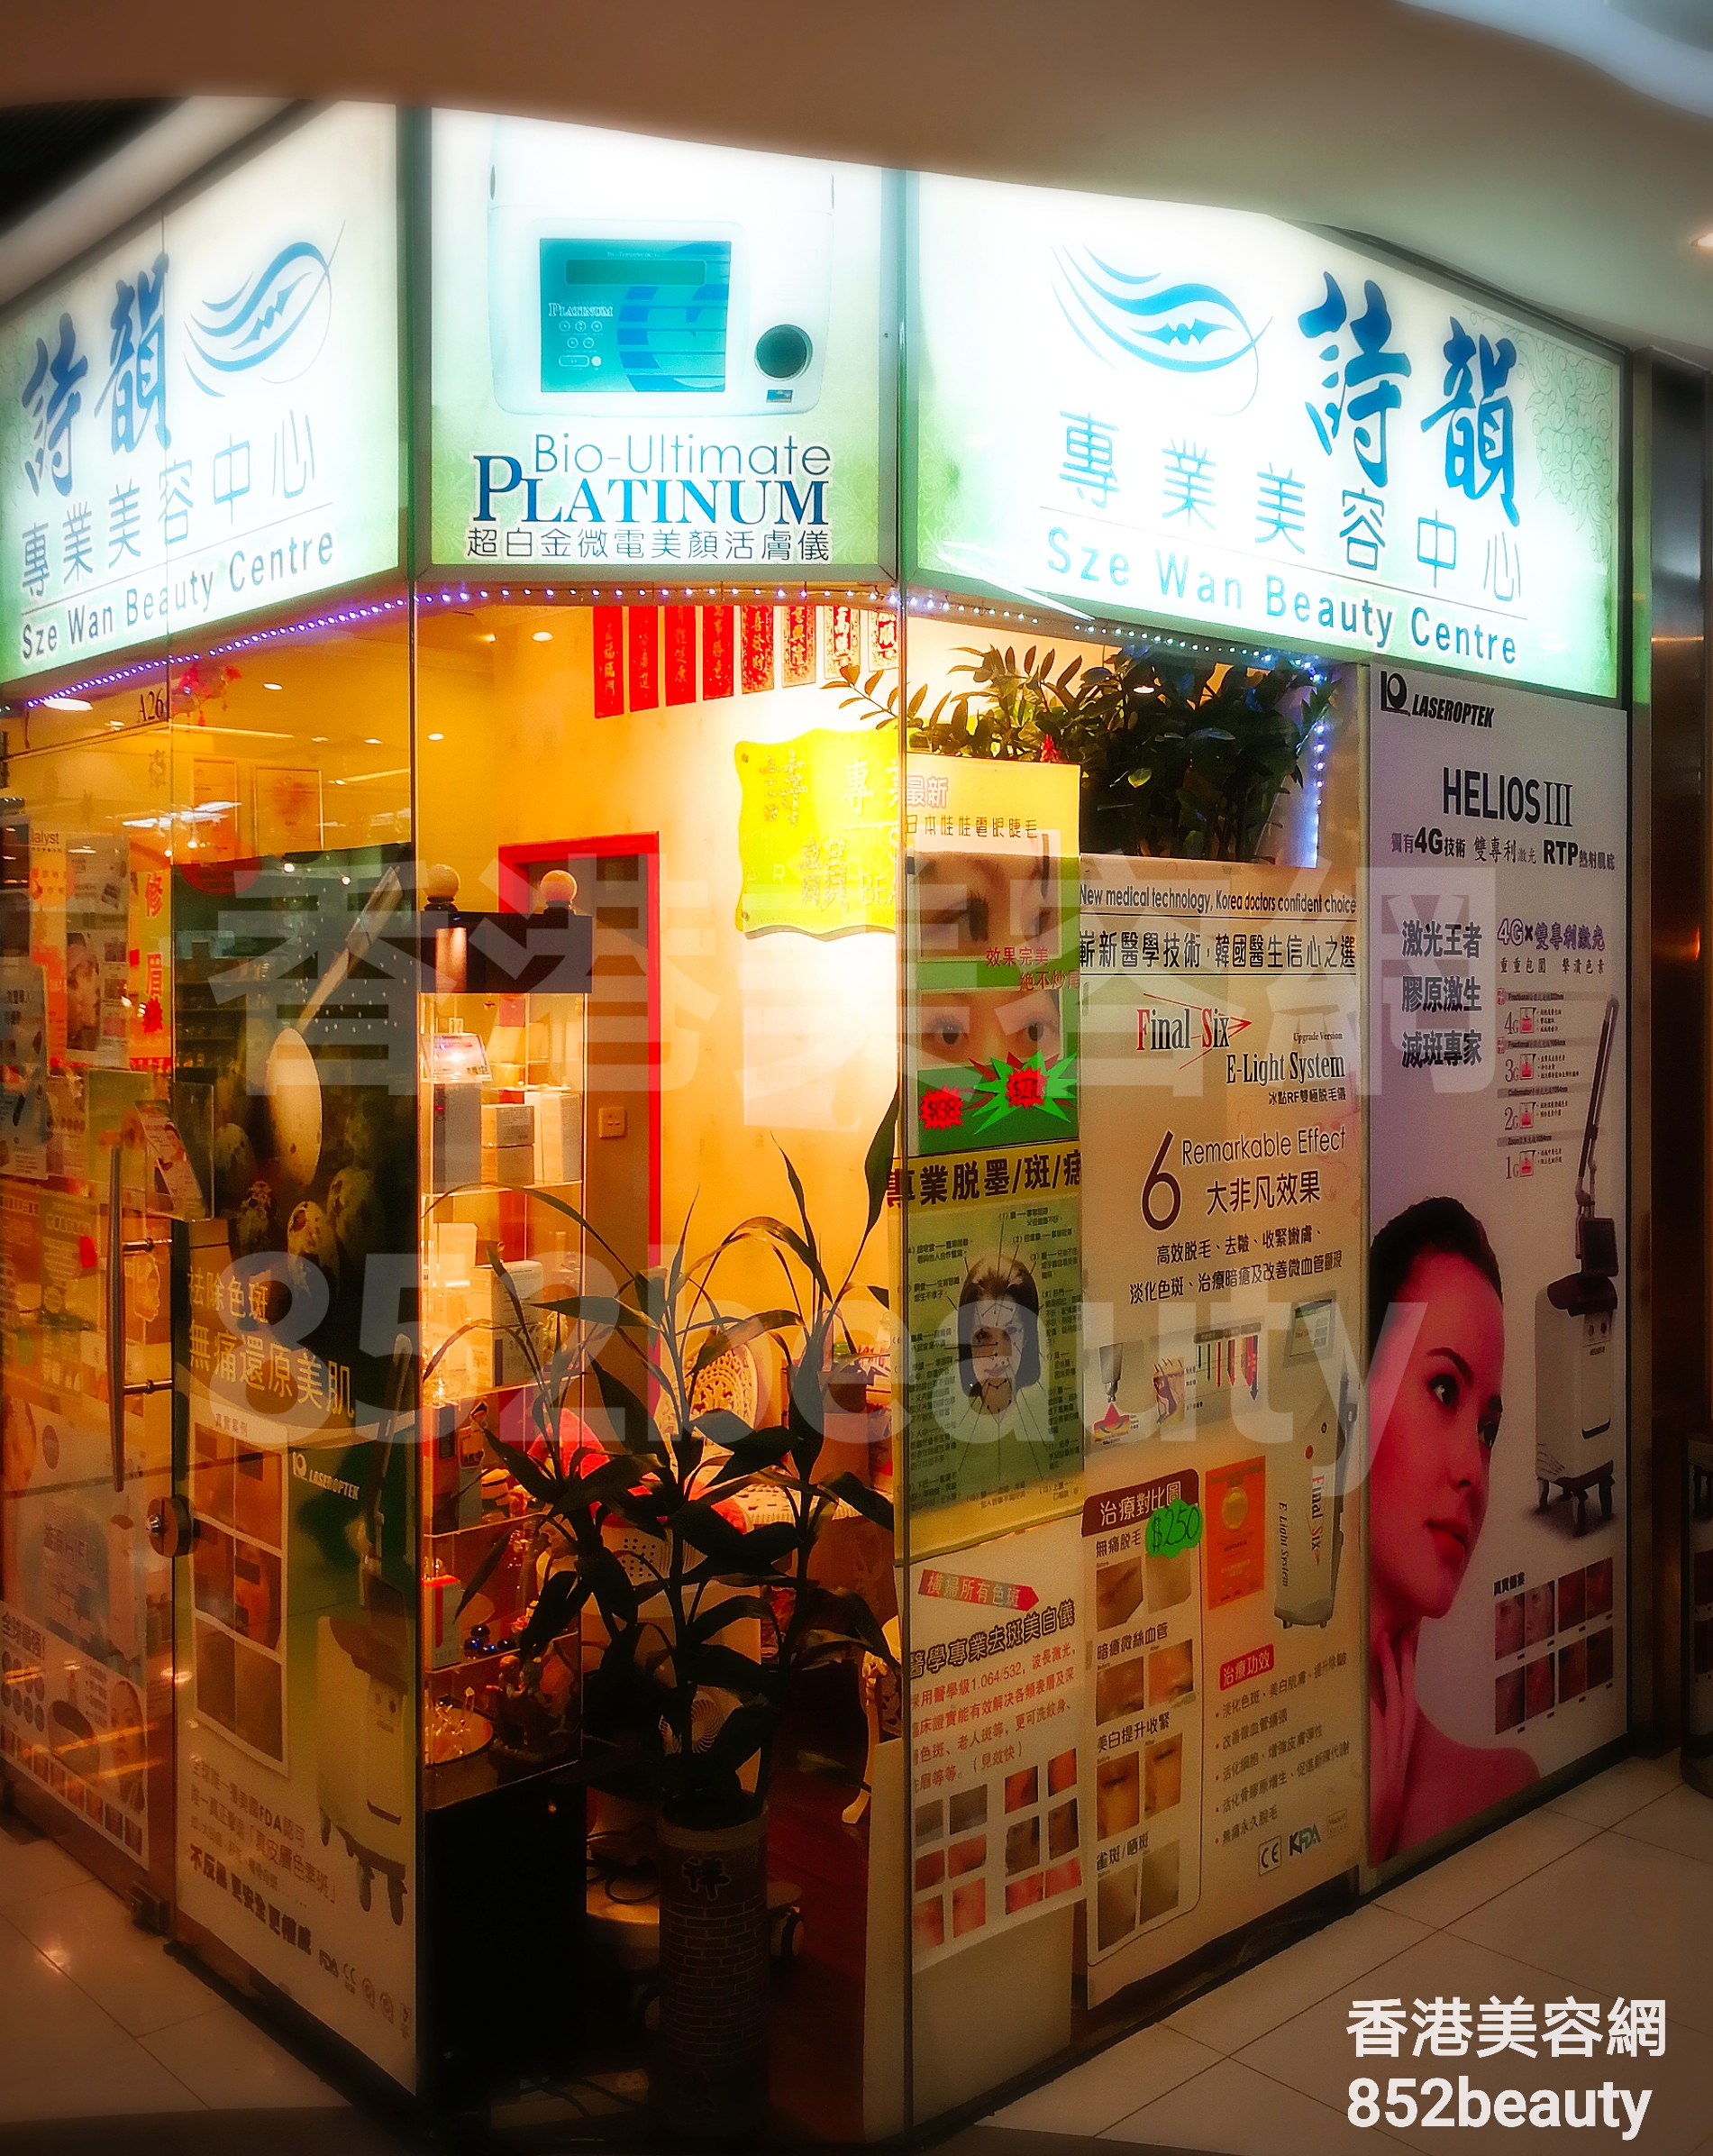 香港美容網 Hong Kong Beauty Salon 美容院 / 美容師: 詩韻 專業美容中心